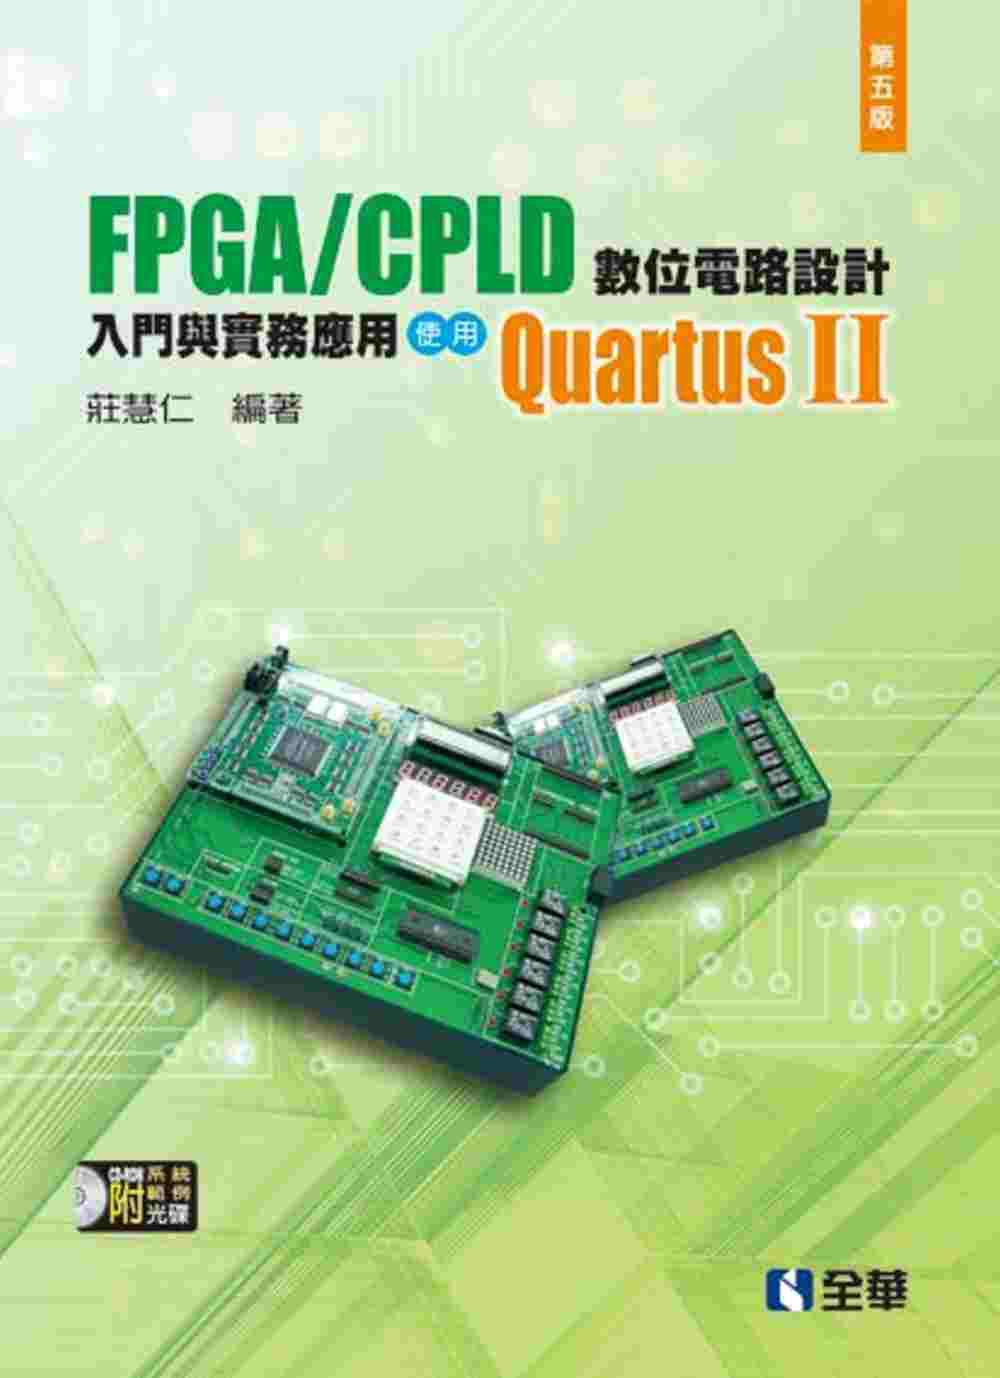 FPGA/CPLD